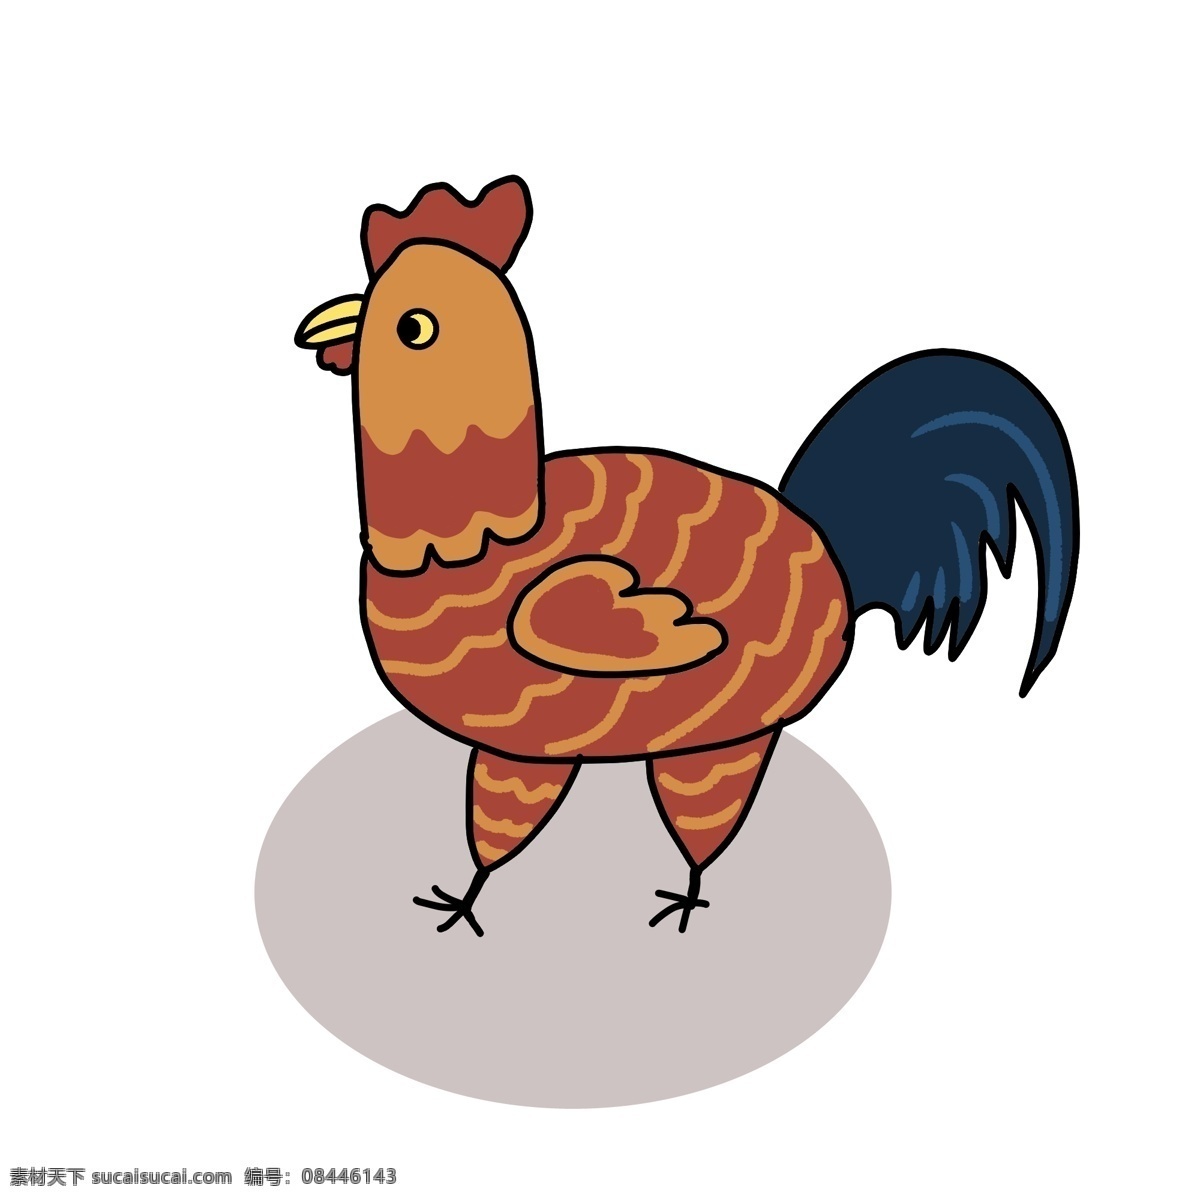 公鸡 卡通 可爱 手绘 动物